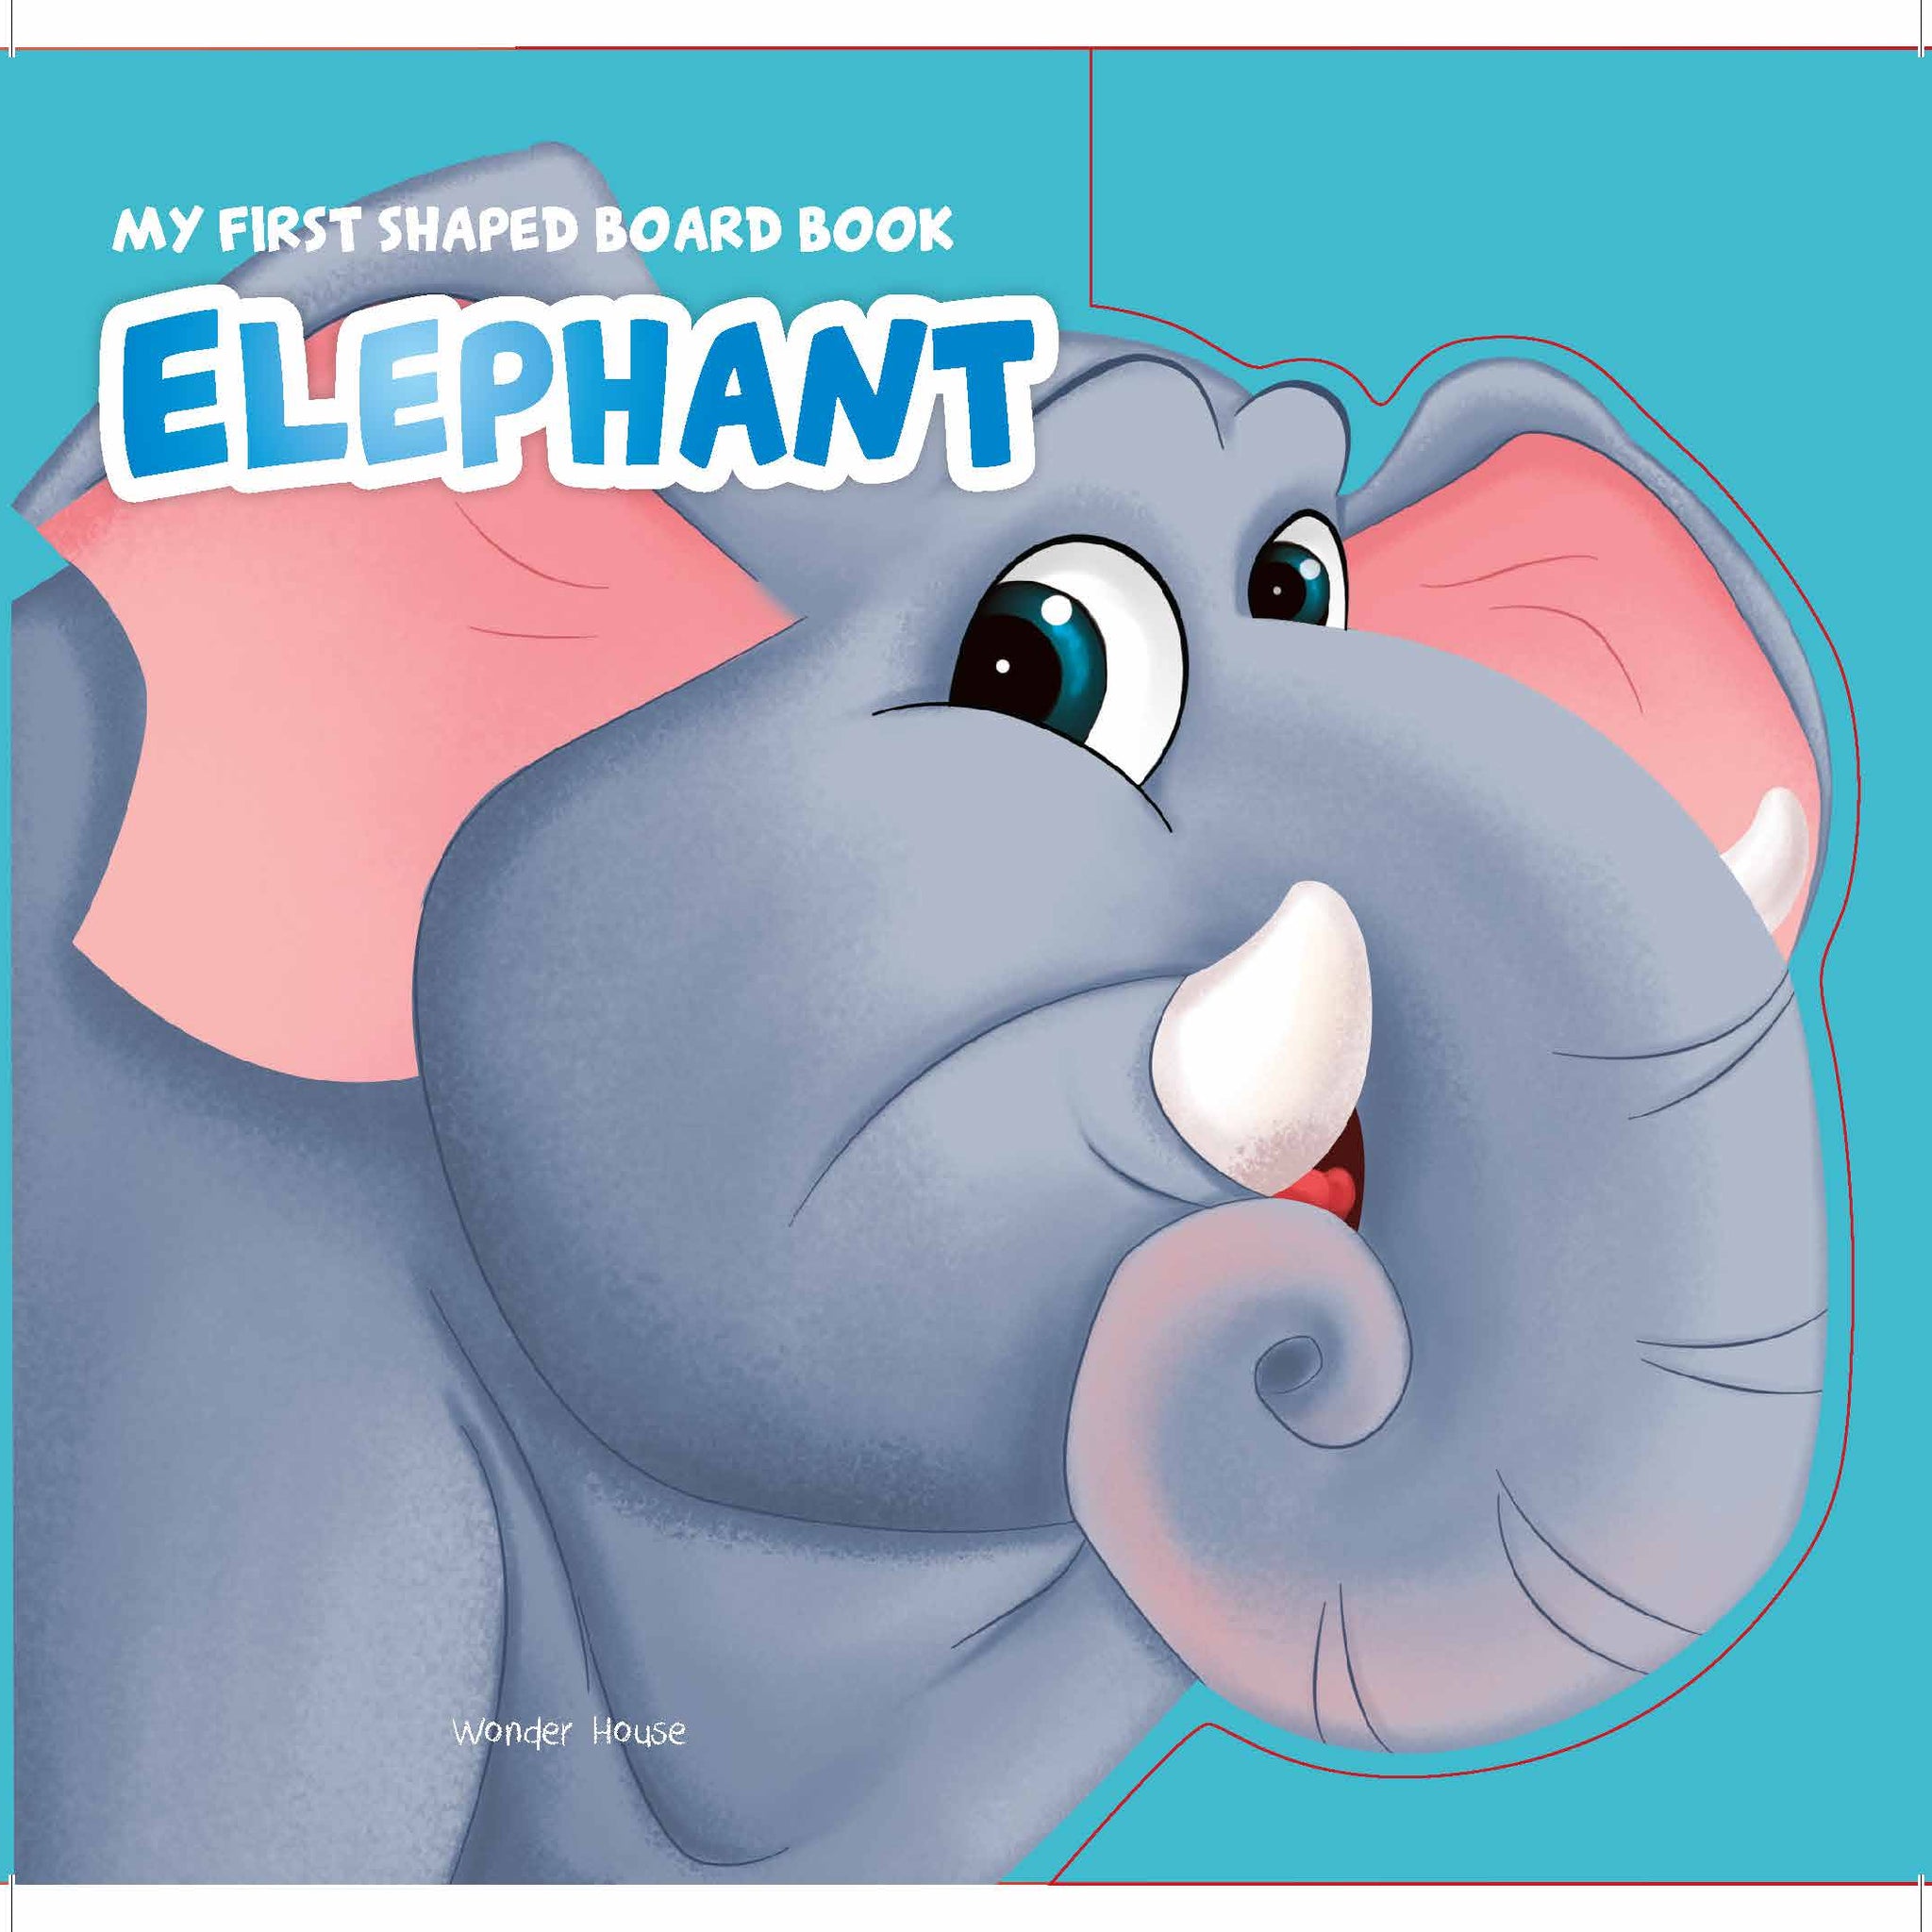 MyFirstShapedBoardbook- Elephant, Die-Cut Animals, Picture Book for Children